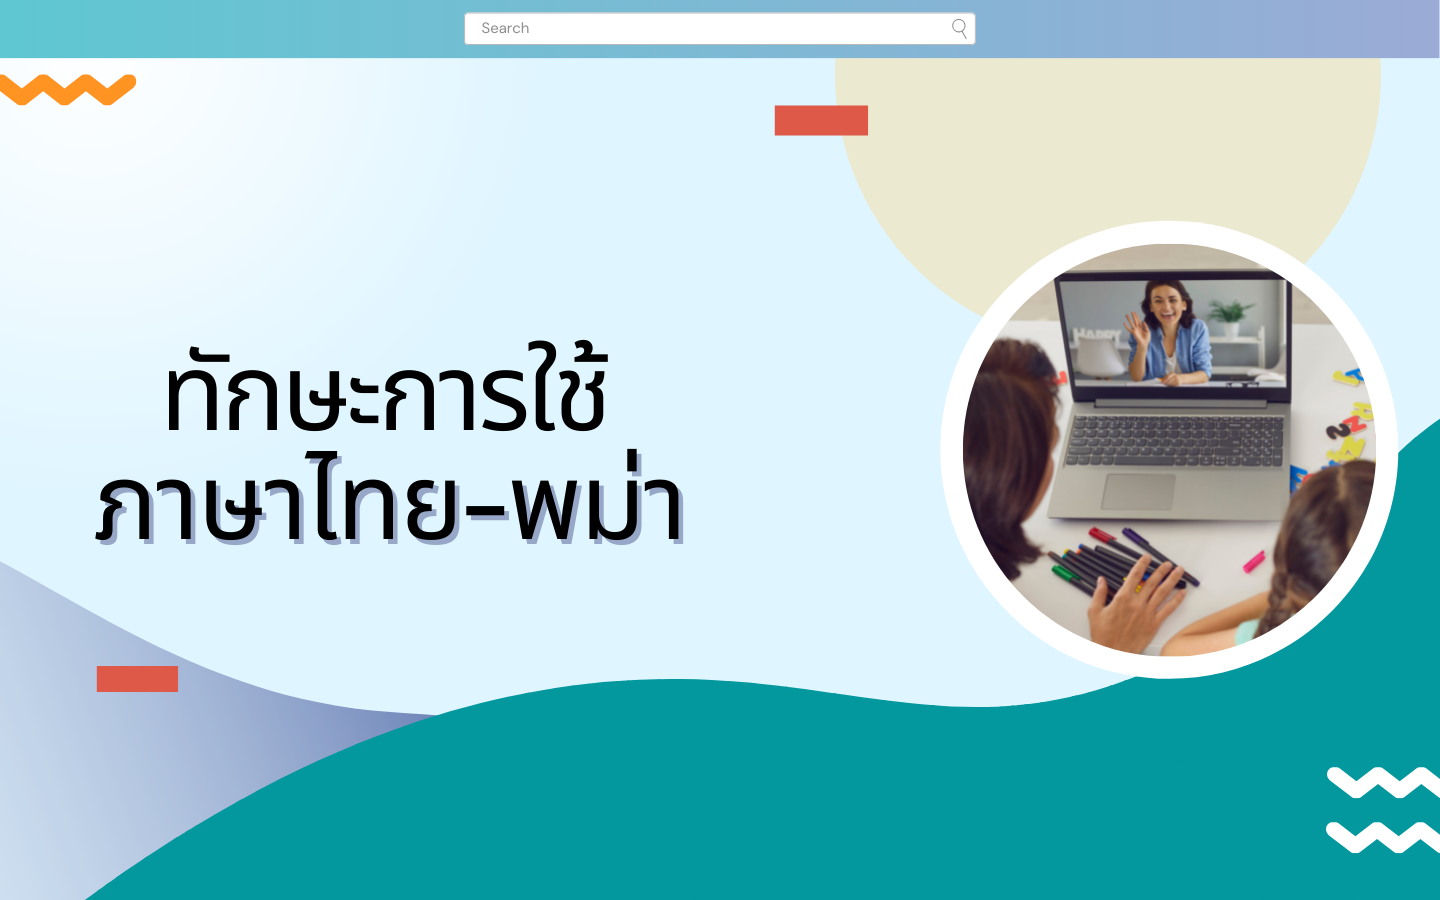 ทักษะการใช้ภาษาไทย-พม่า